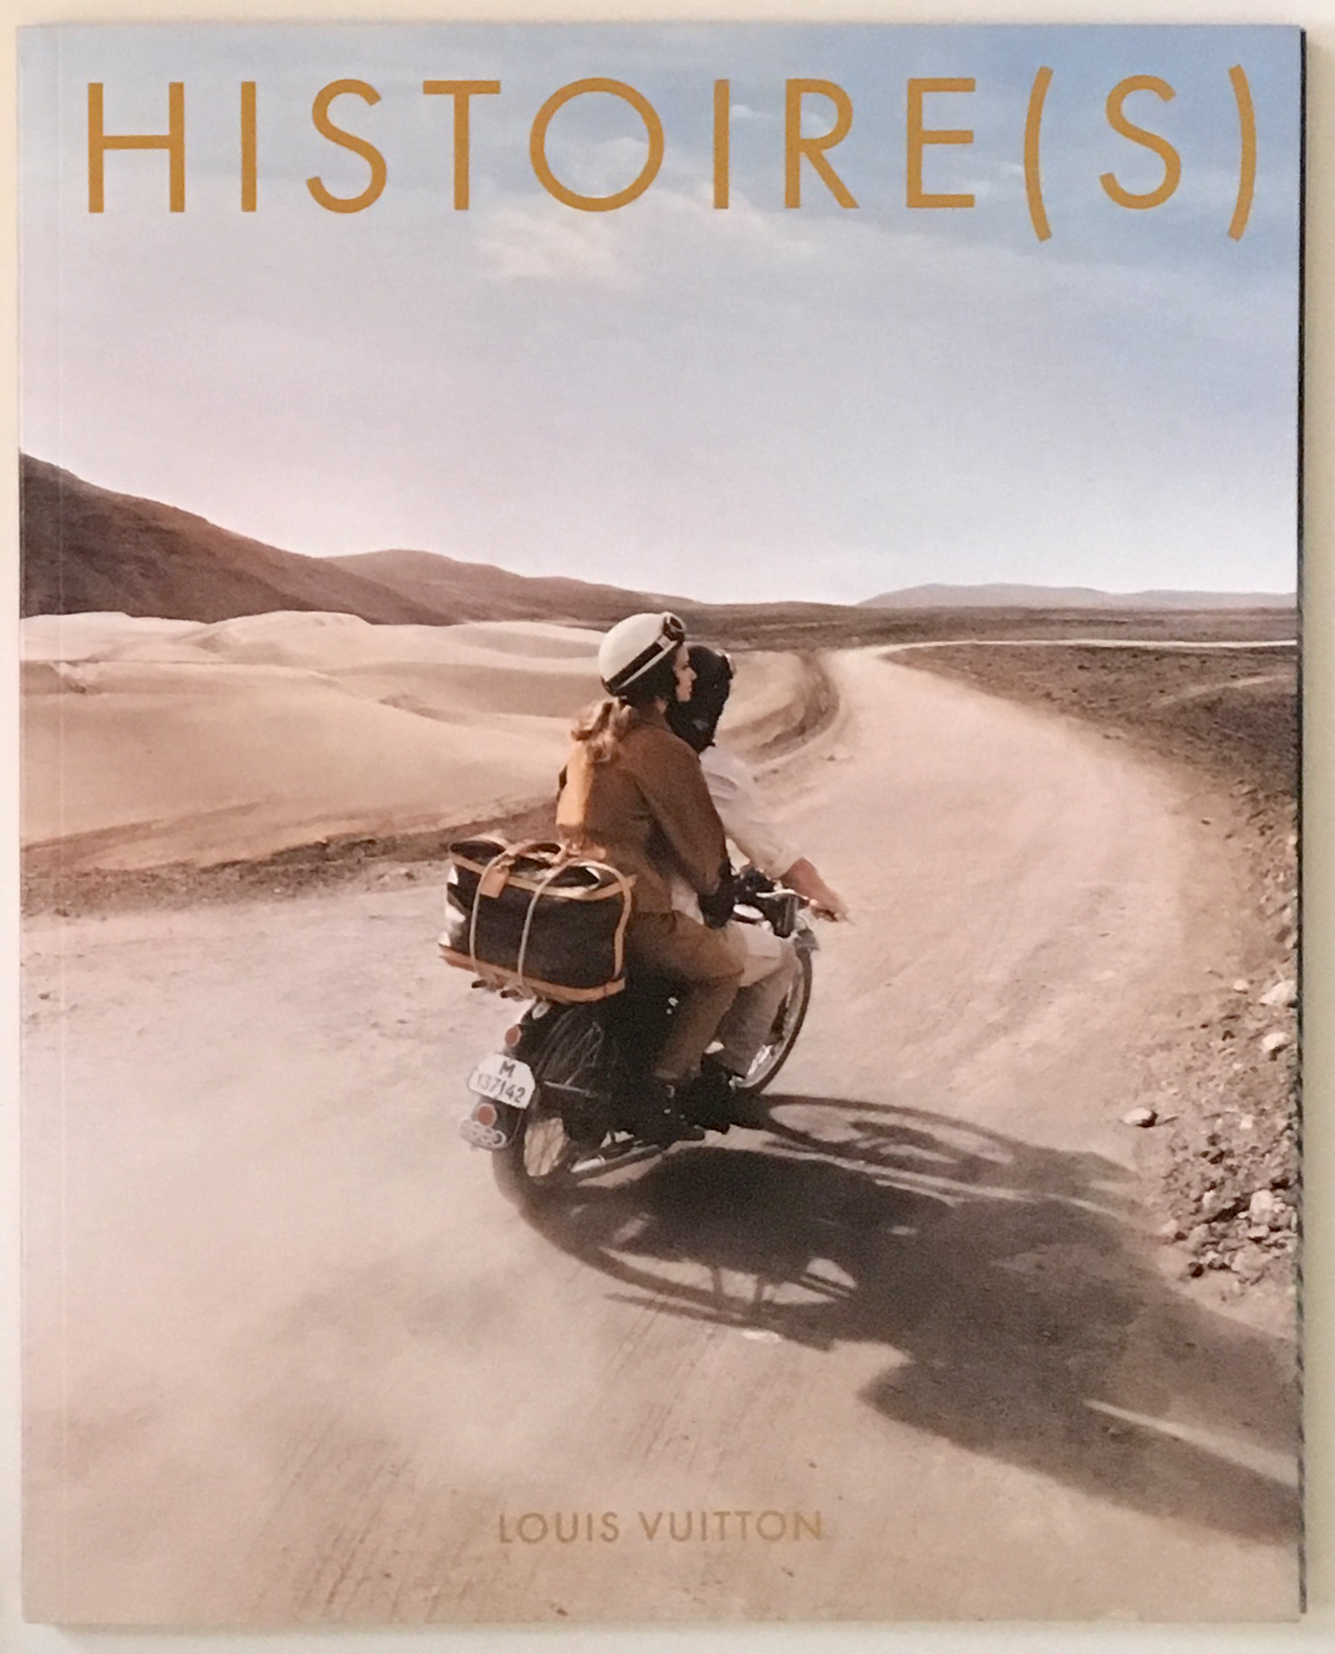 Louis Vuitton Paris Historie(s) History Stories Accessories Catalog Maroquinerie Men Women Cover Marc Jacobs Collection 2013